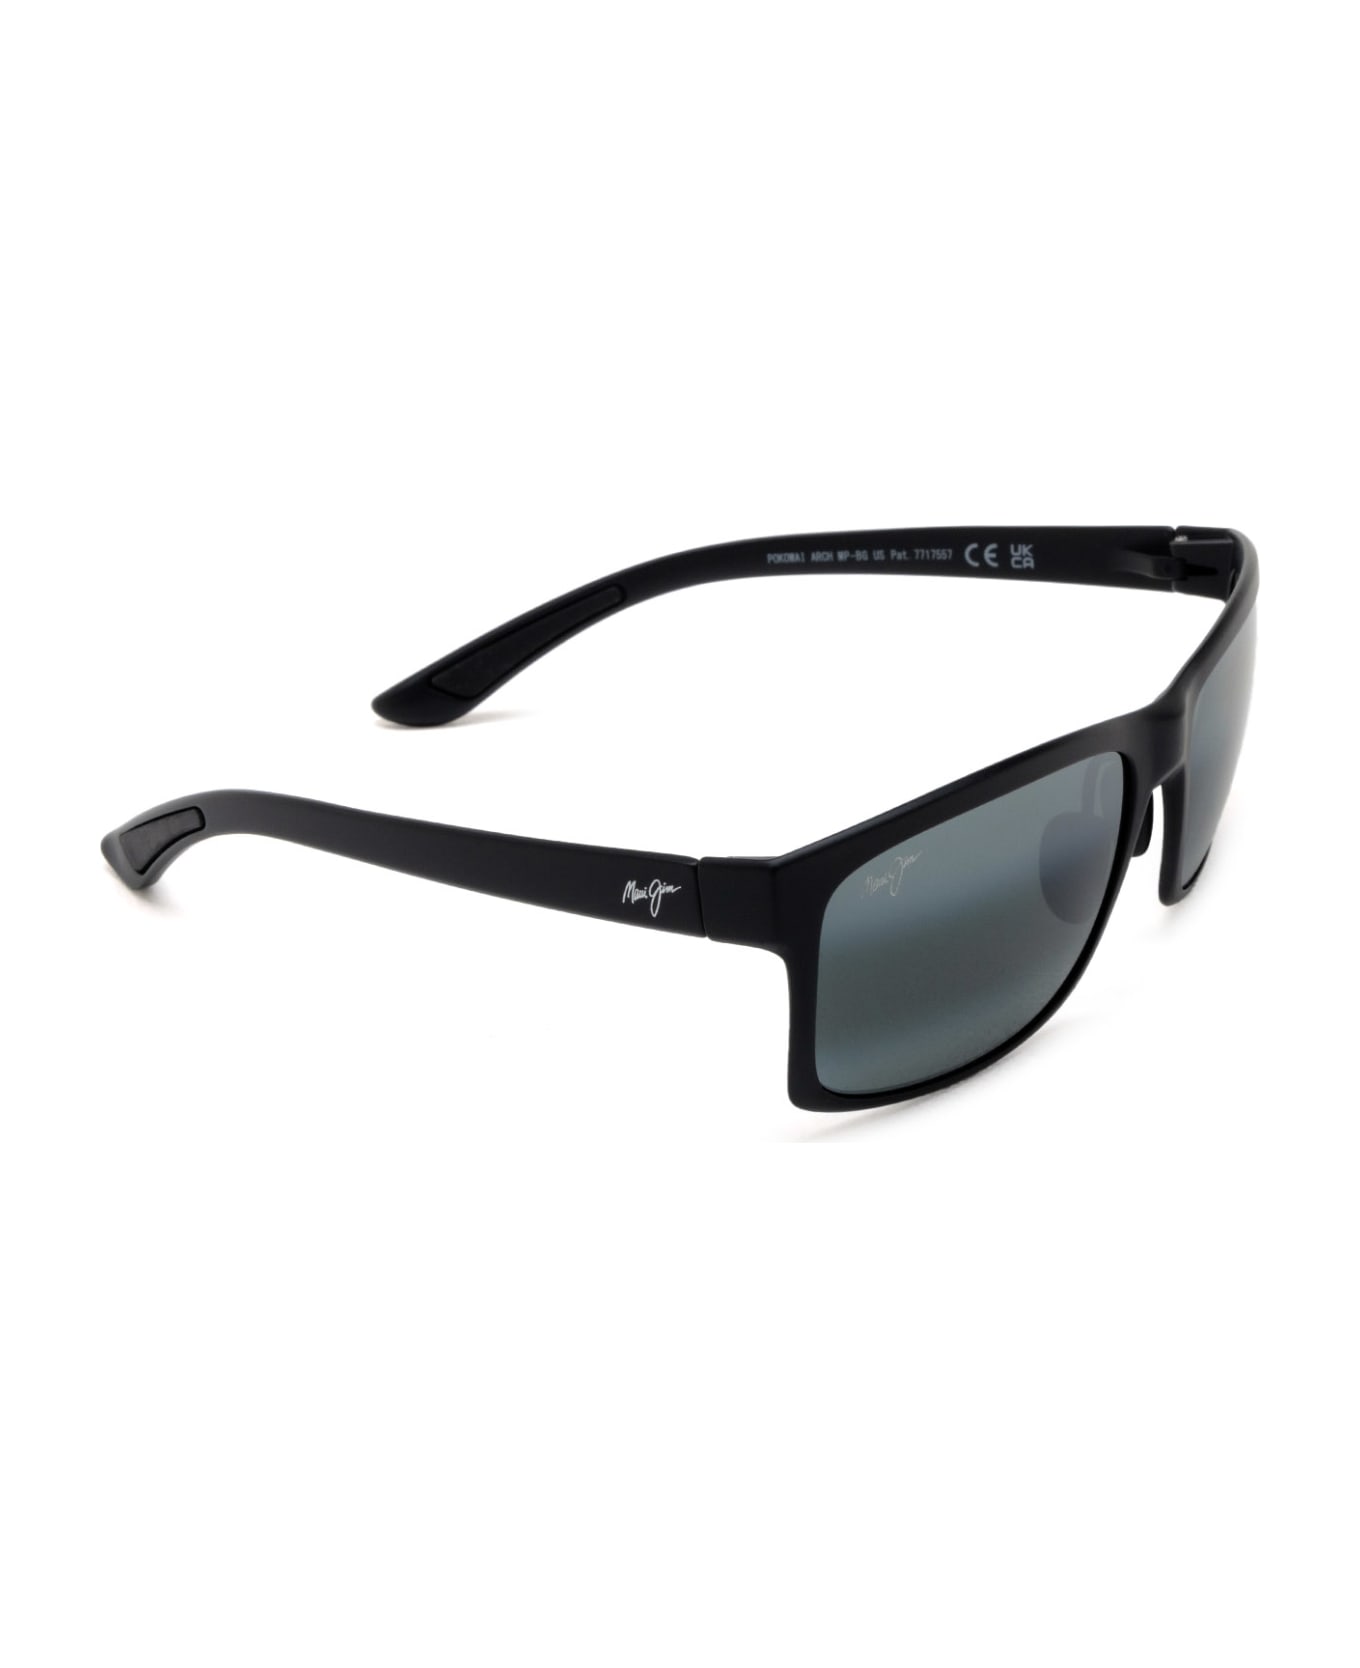 Maui Jim Mj439 Black Matte Sunglasses - Black Matte